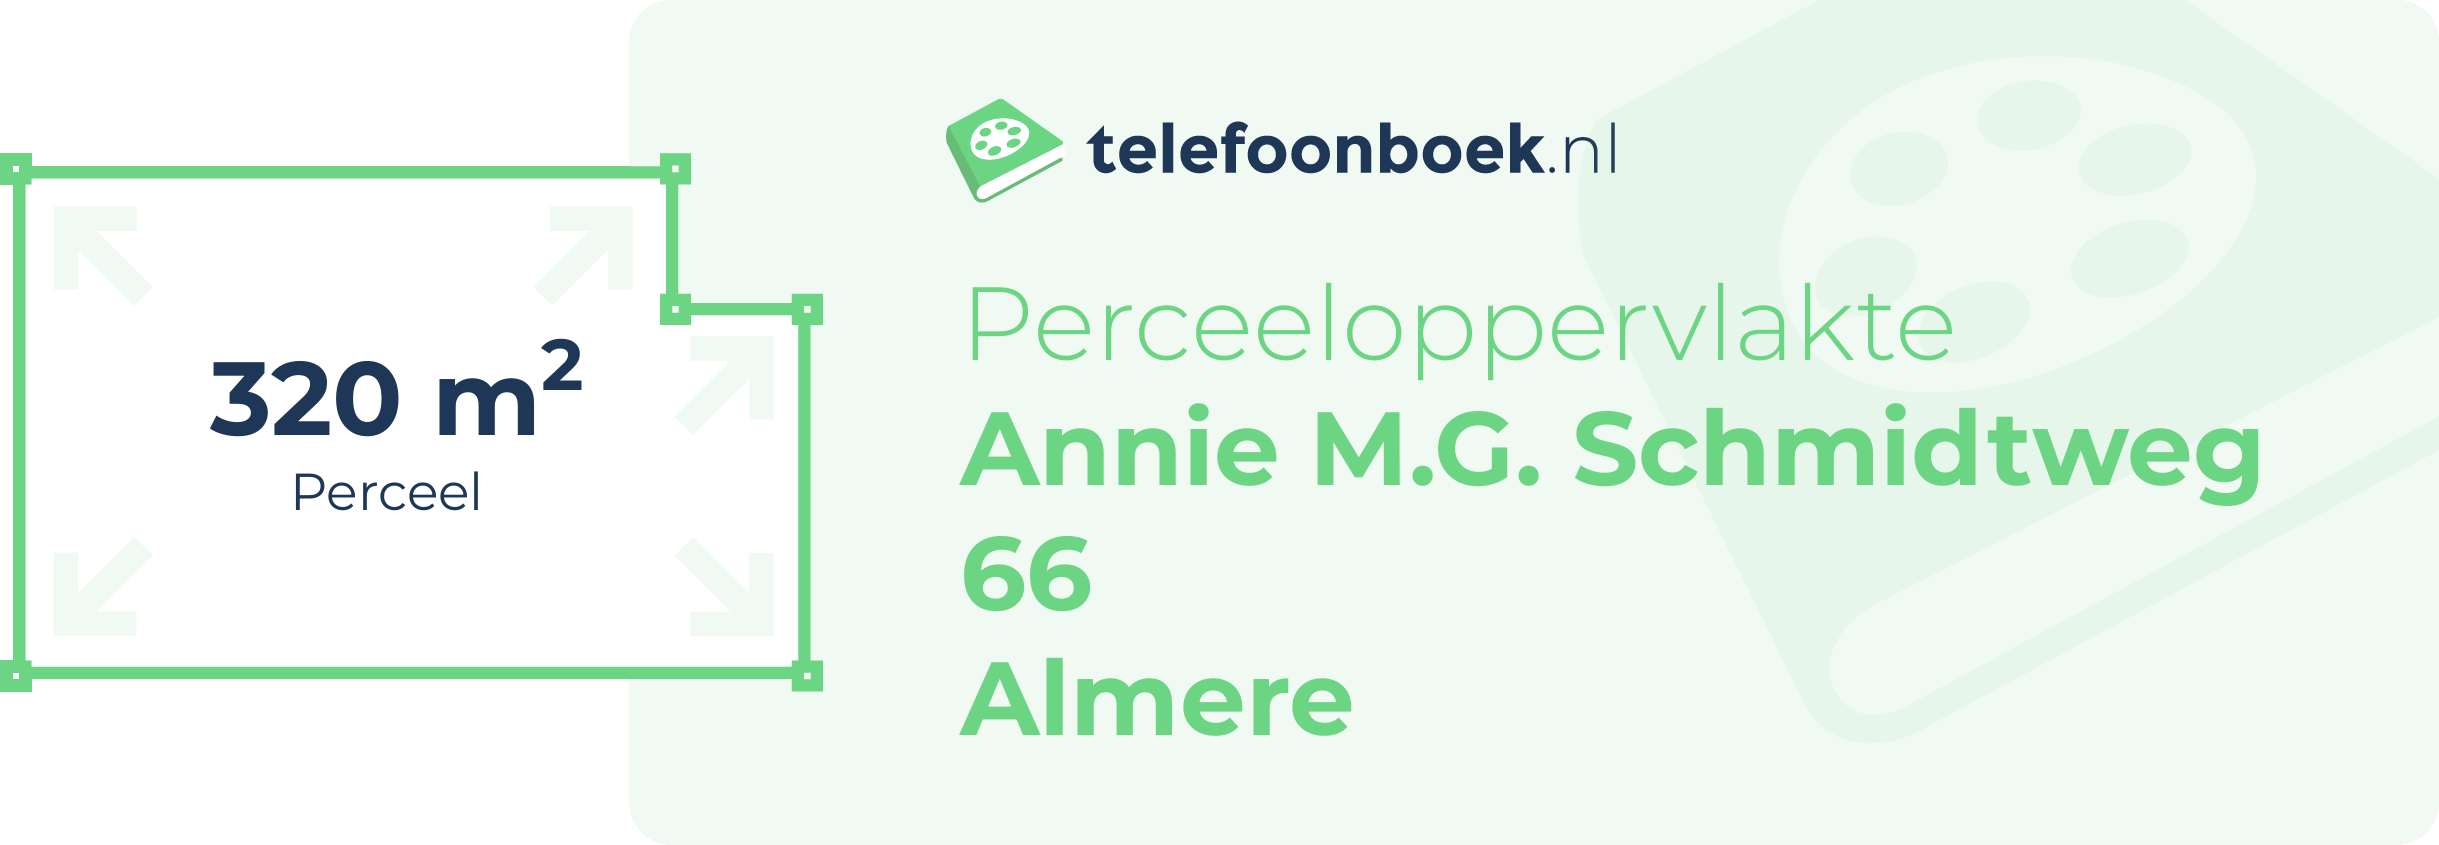 Perceeloppervlakte Annie M.G. Schmidtweg 66 Almere